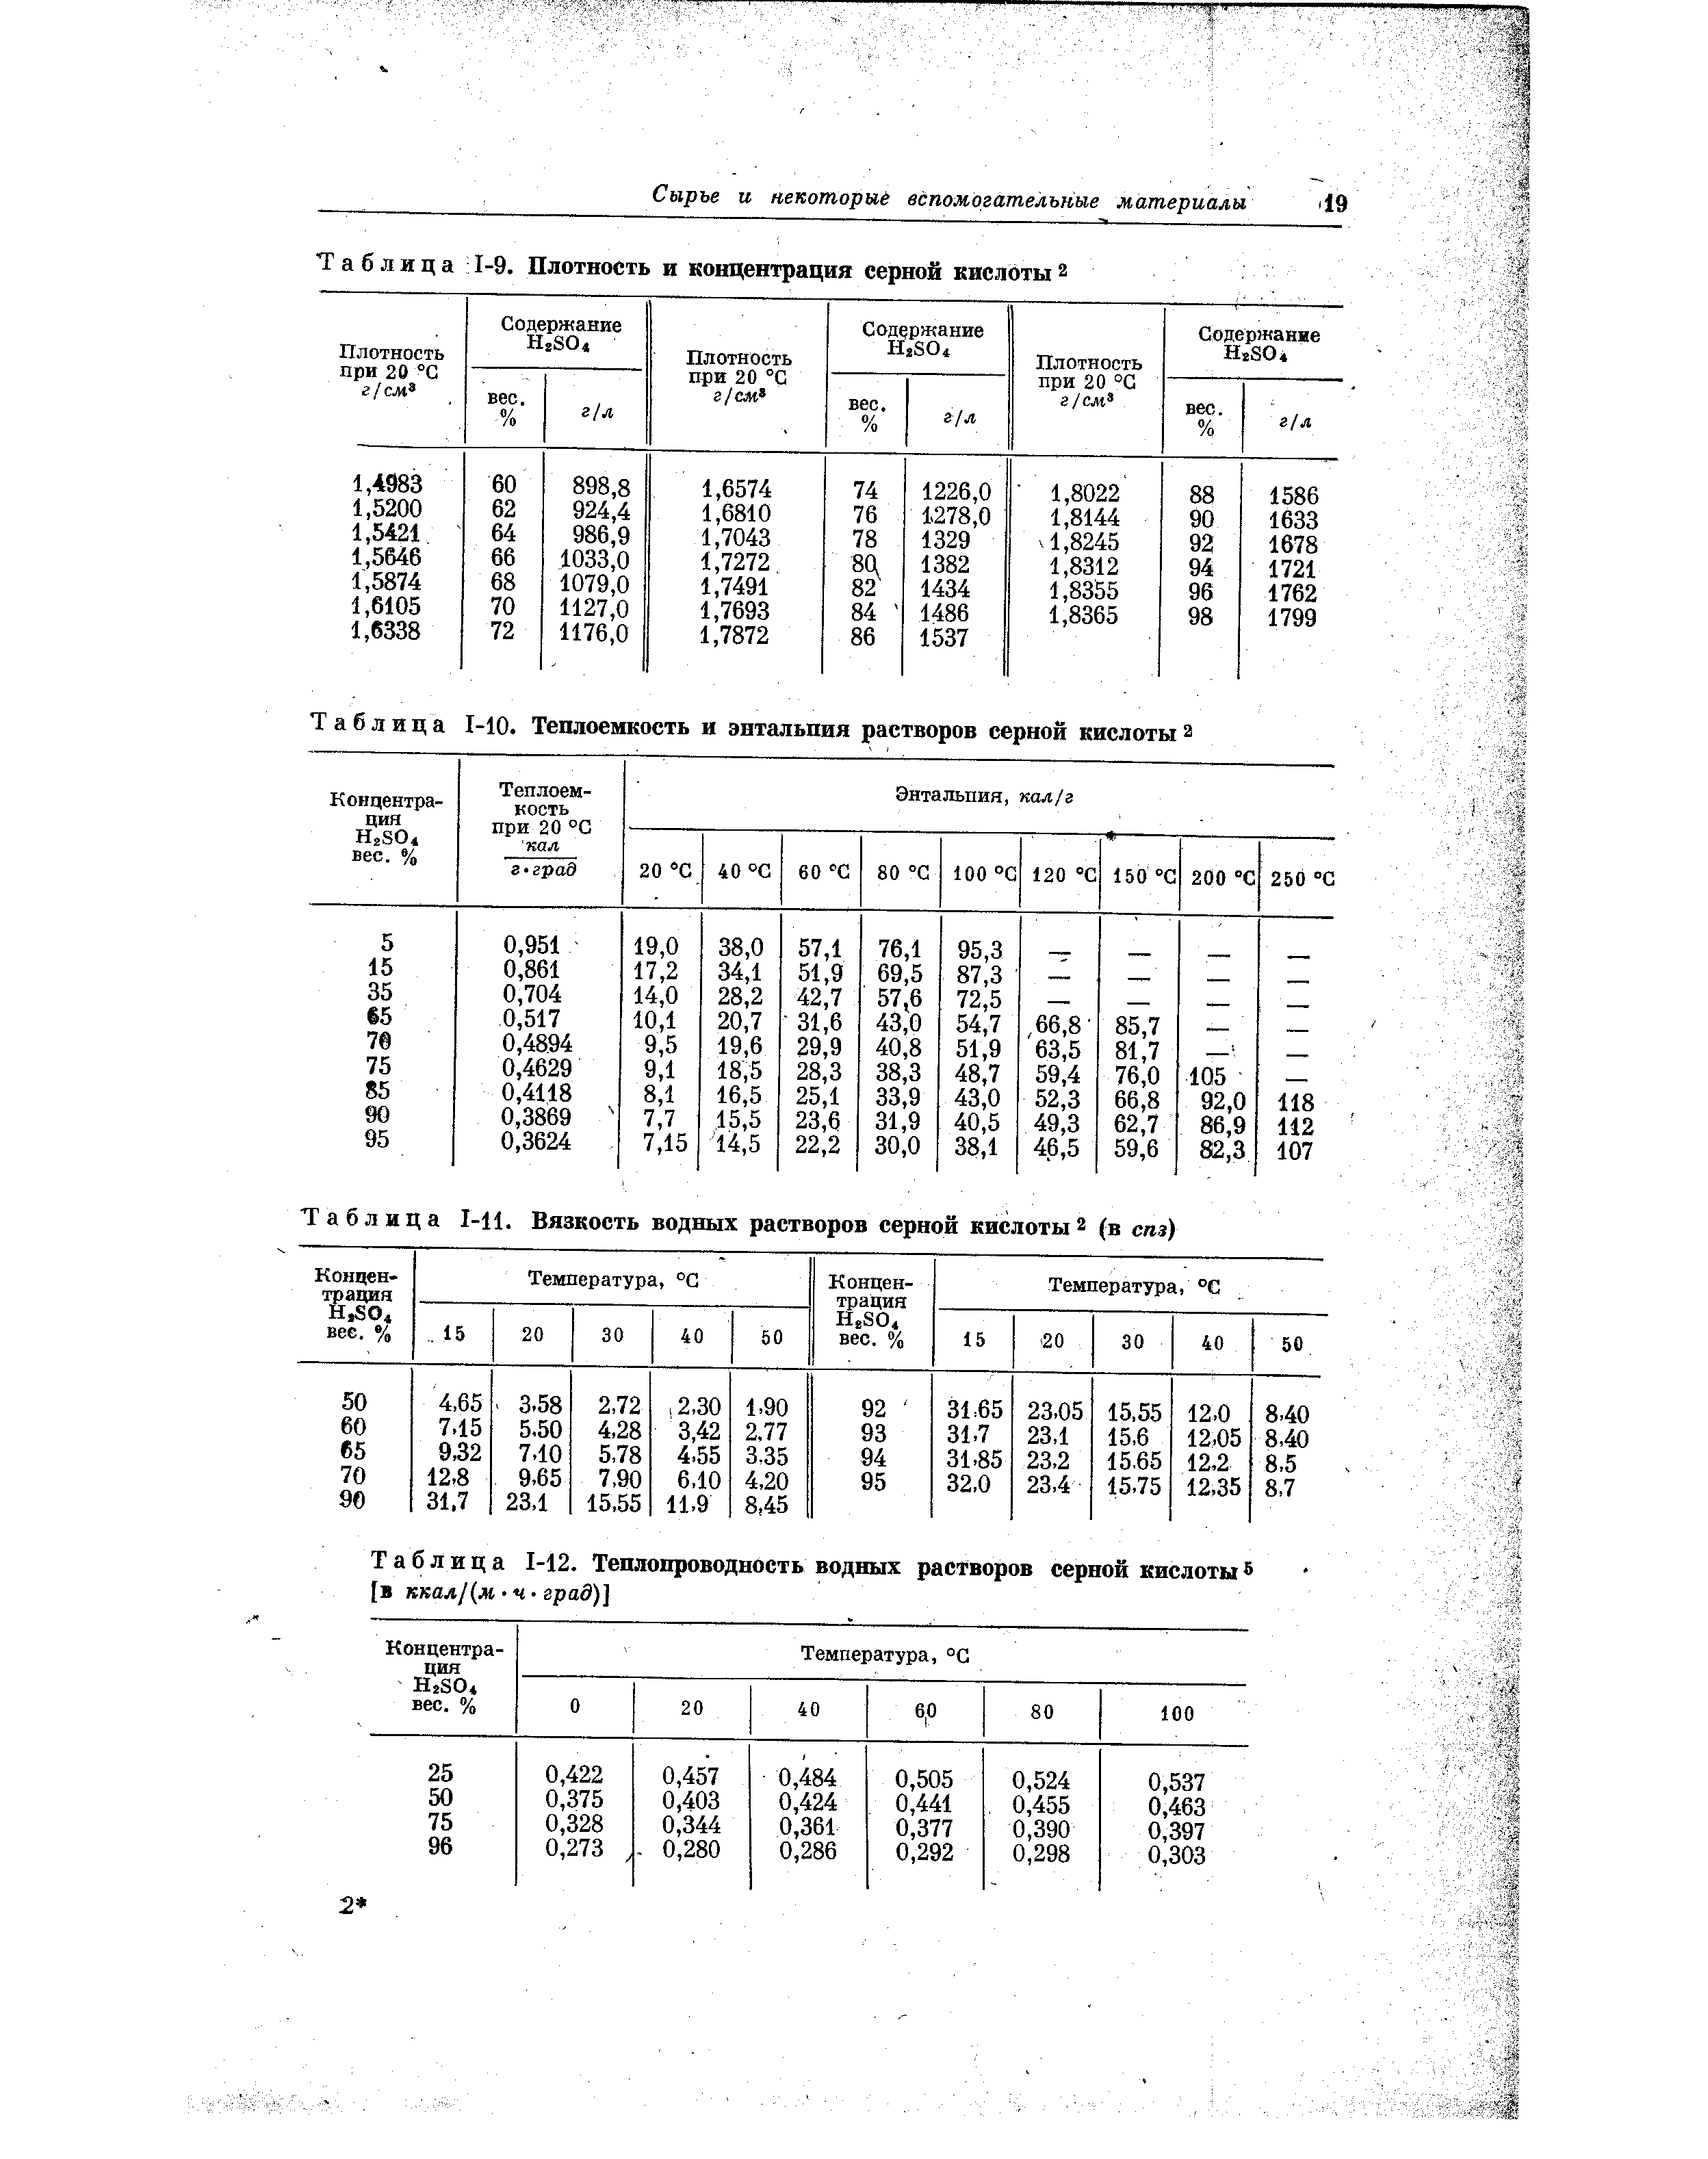 Таблица 1-Ц. Вязкость водных растворов серной кислоты2 (в спз)
